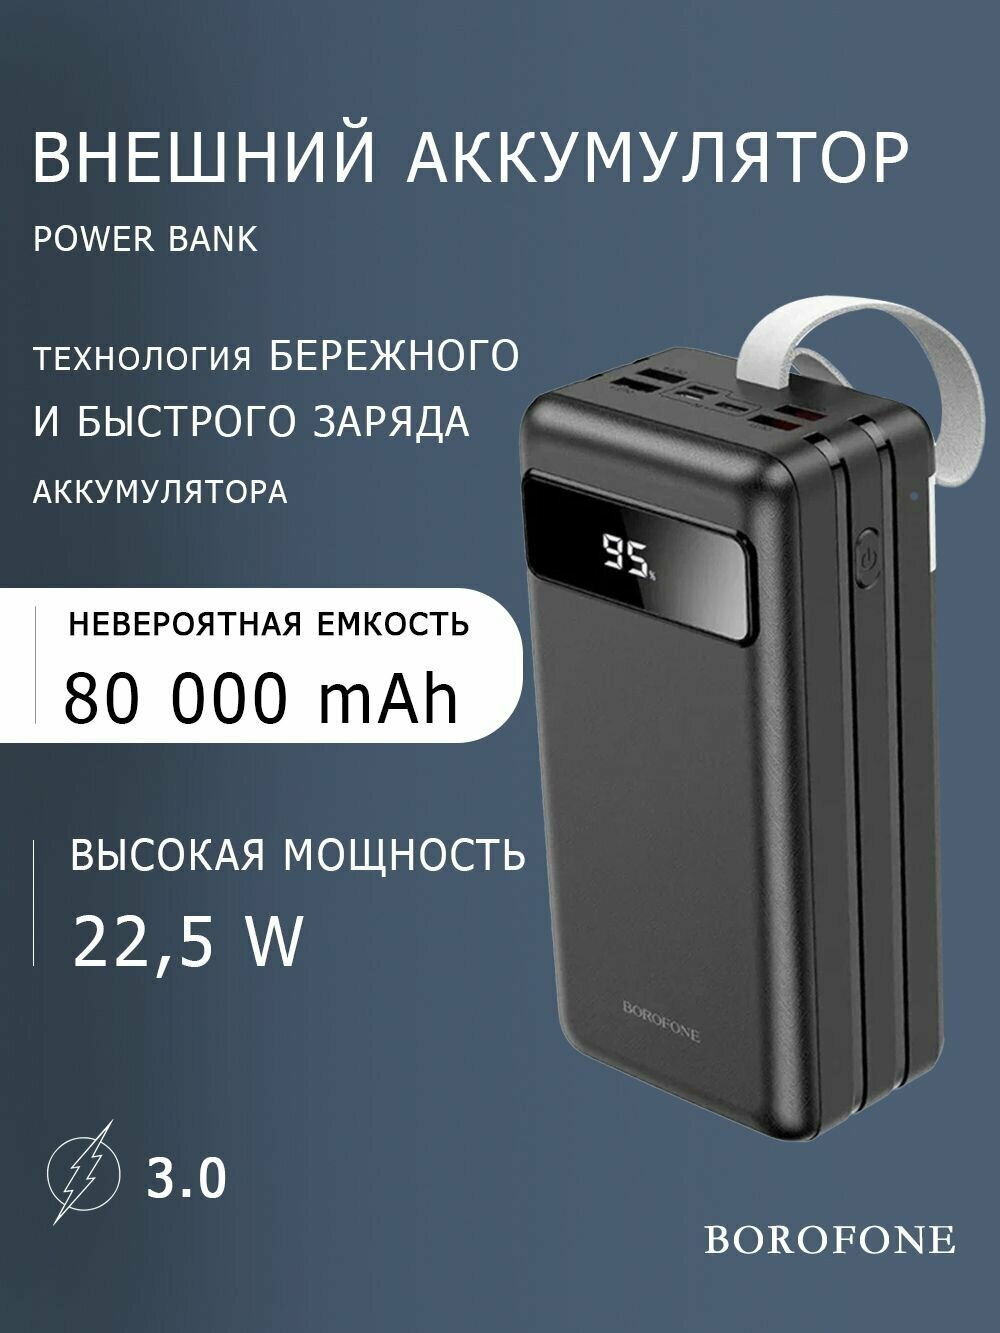 Power Bank внешний аккумулятор 80000 mAh с быстрой зарядкой